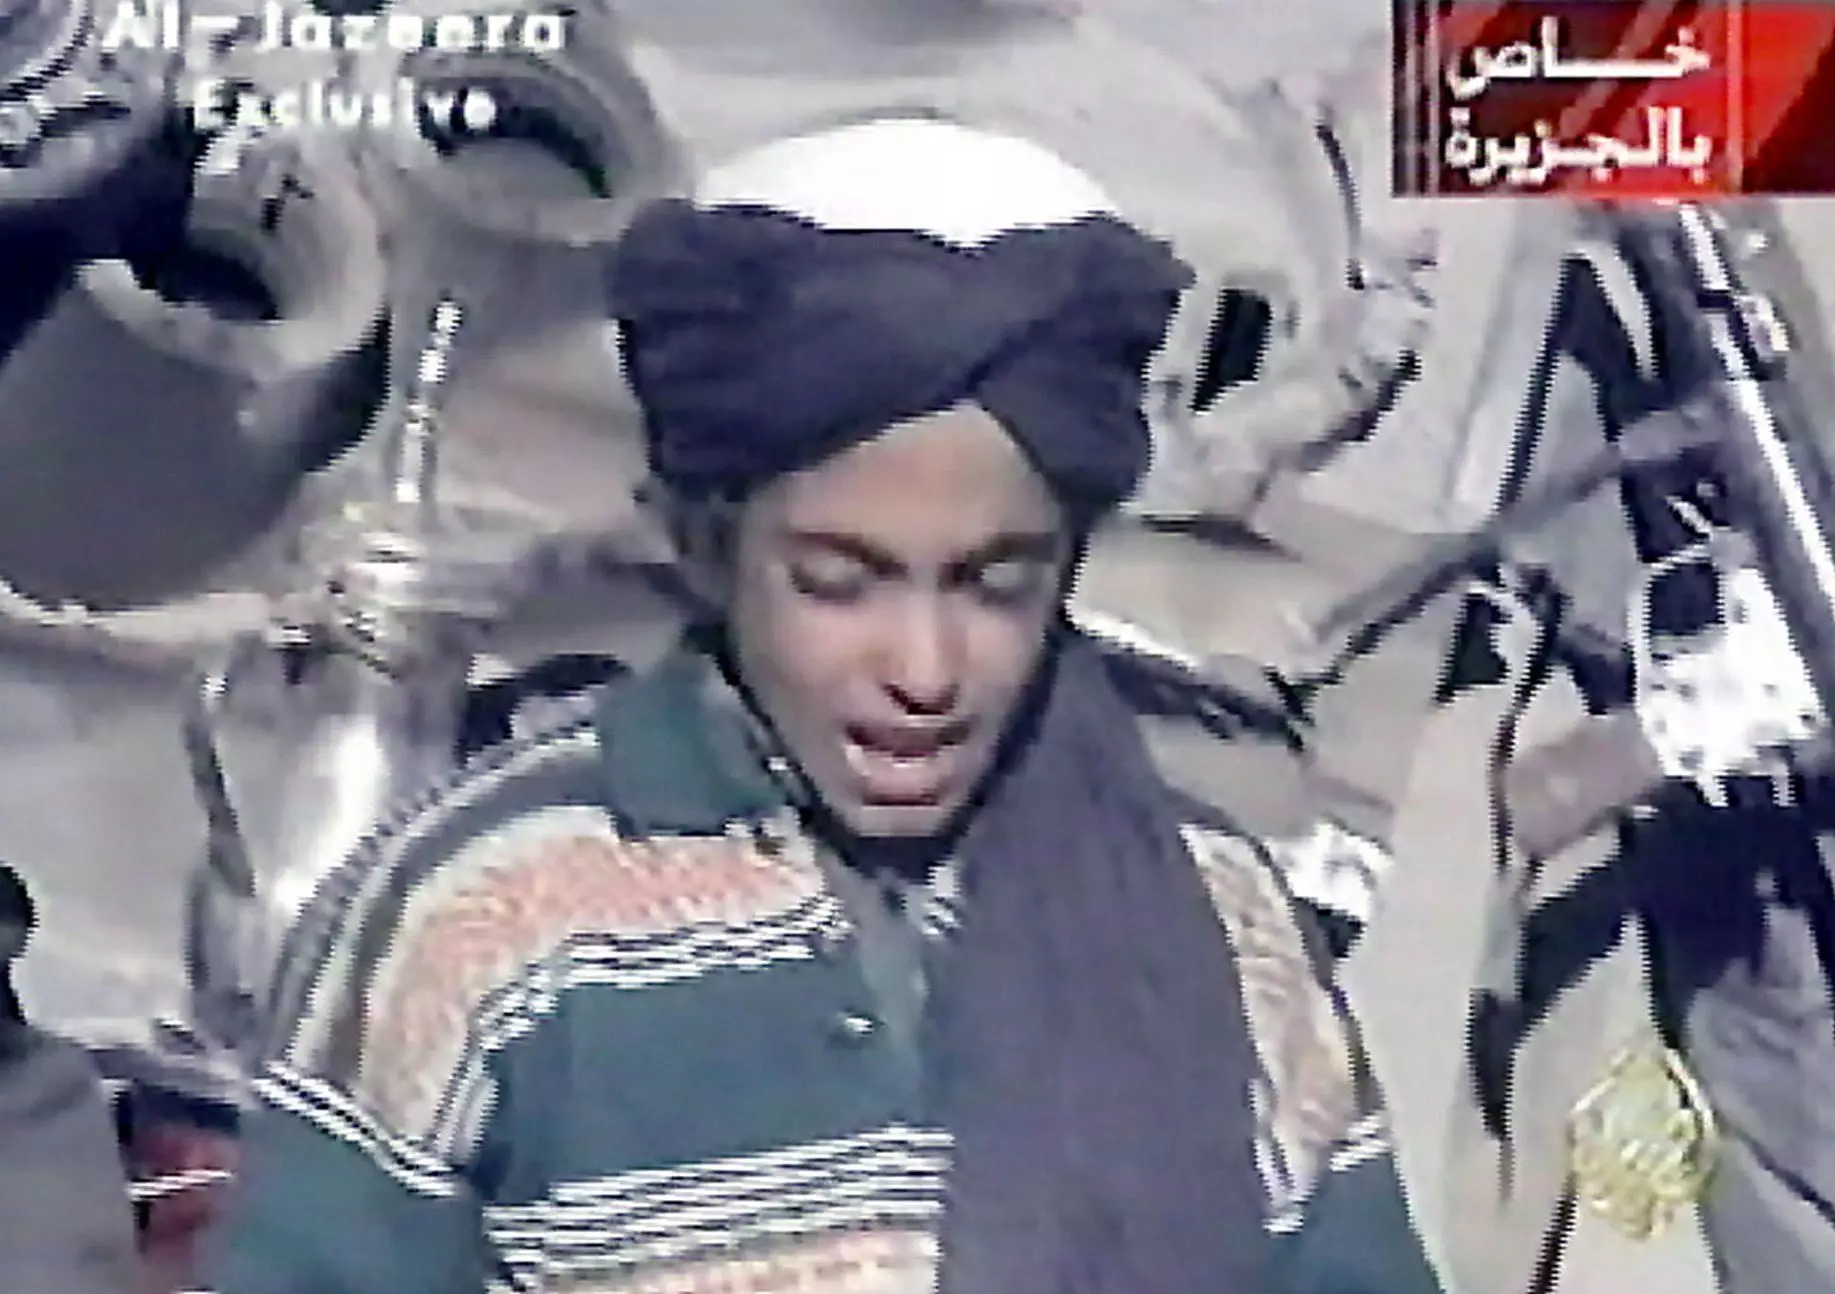 Hamza appeared in several propaganda videos for the terrorist group.